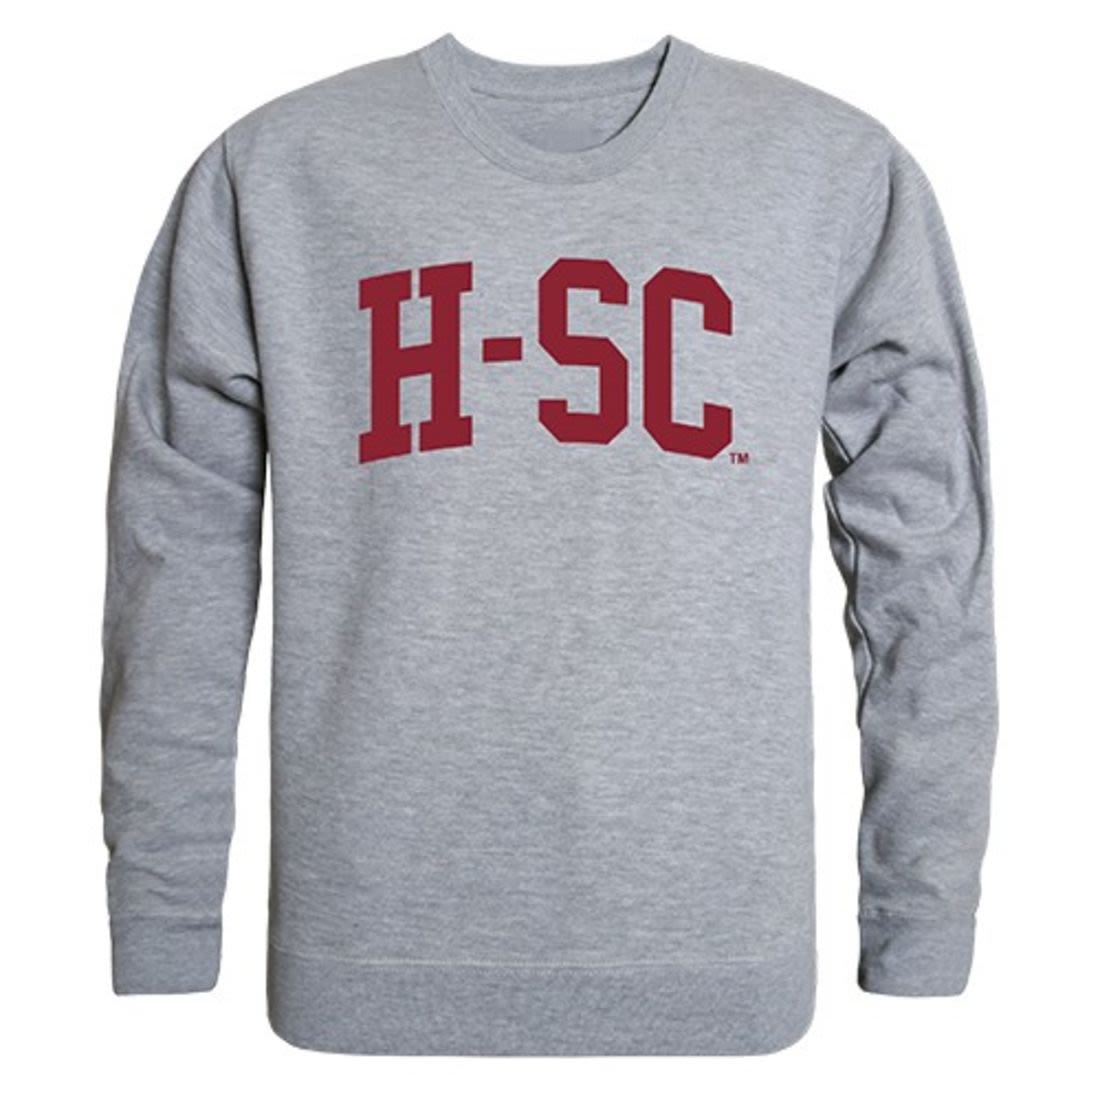 HSC Hampden-Sydney College Game Day Crewneck Pullover Sweatshirt Sweater Heather Grey-Campus-Wardrobe